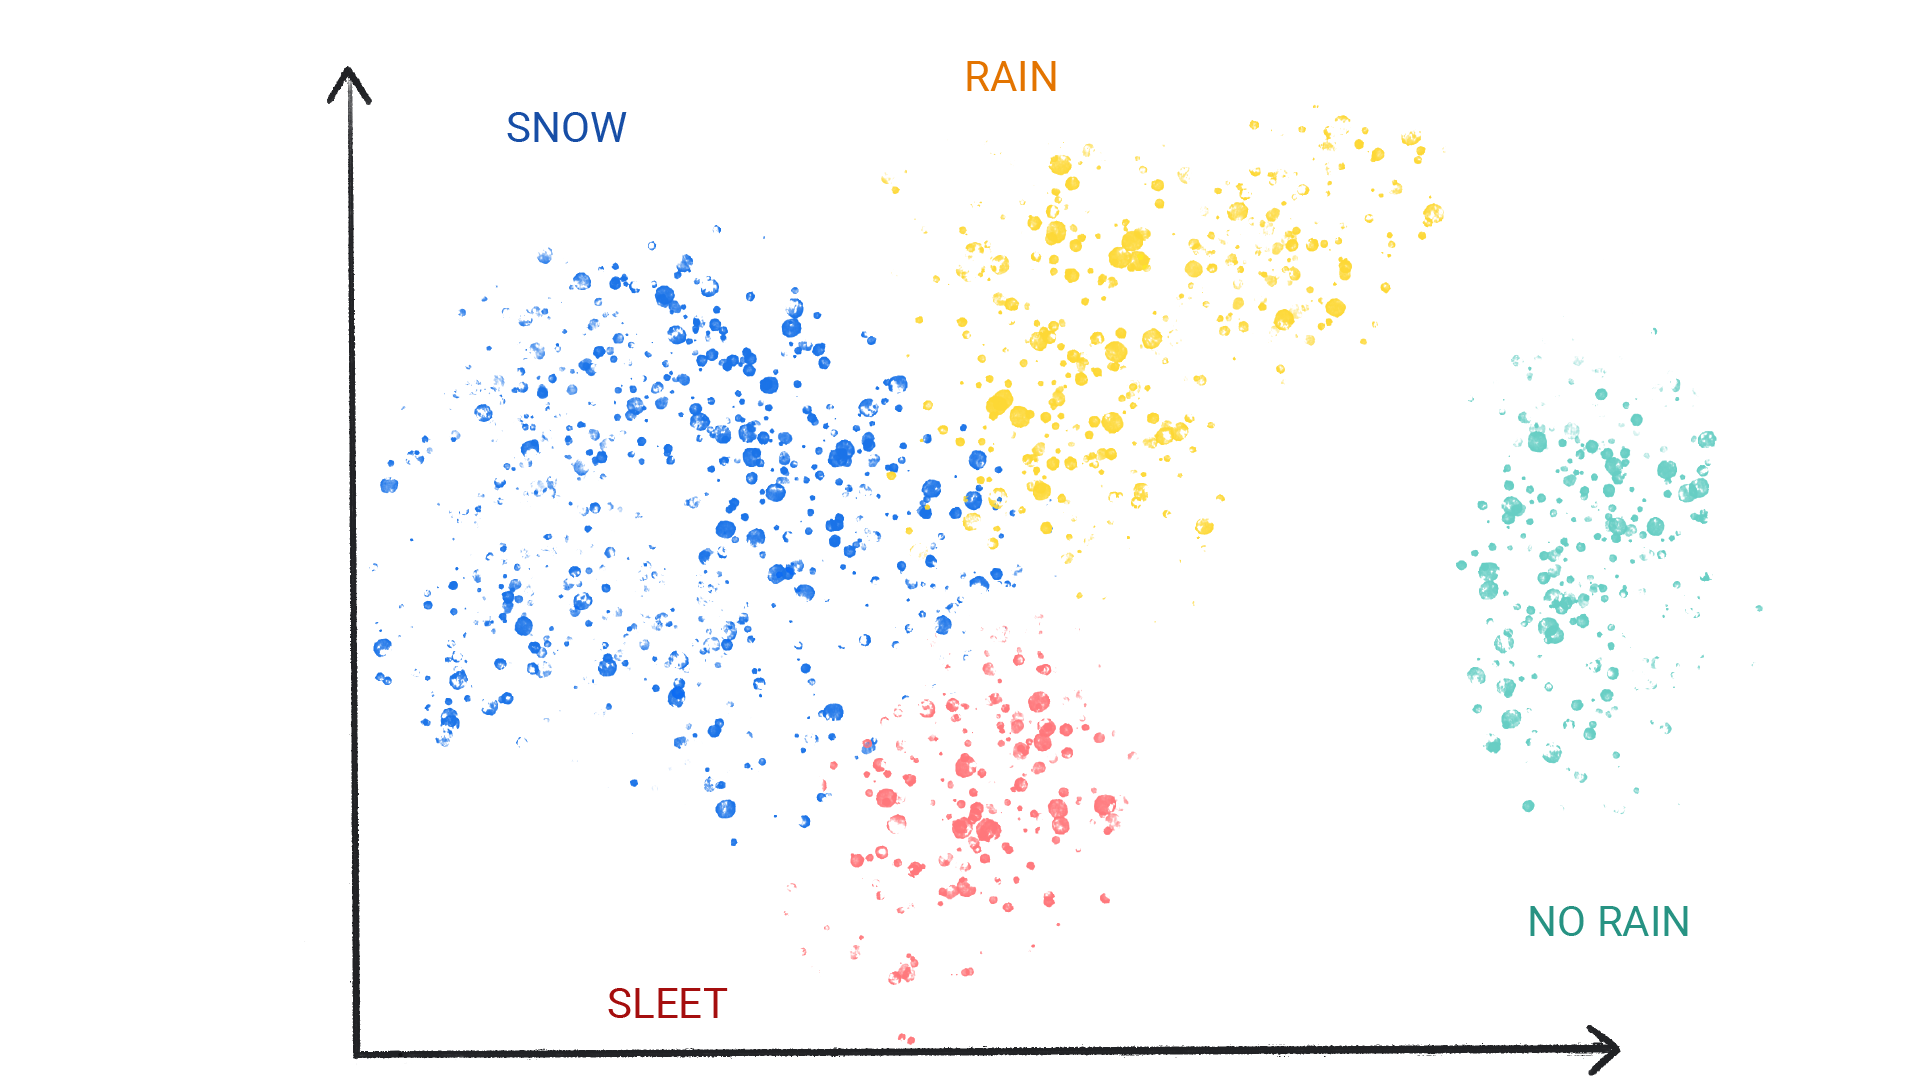 क्लस्टर में रंगीन बिंदुओं को दिखाने वाली इमेज जिन्हें बर्फ़, बारिश, ओले, और नहीं बारिश के तौर पर लेबल किया गया है.